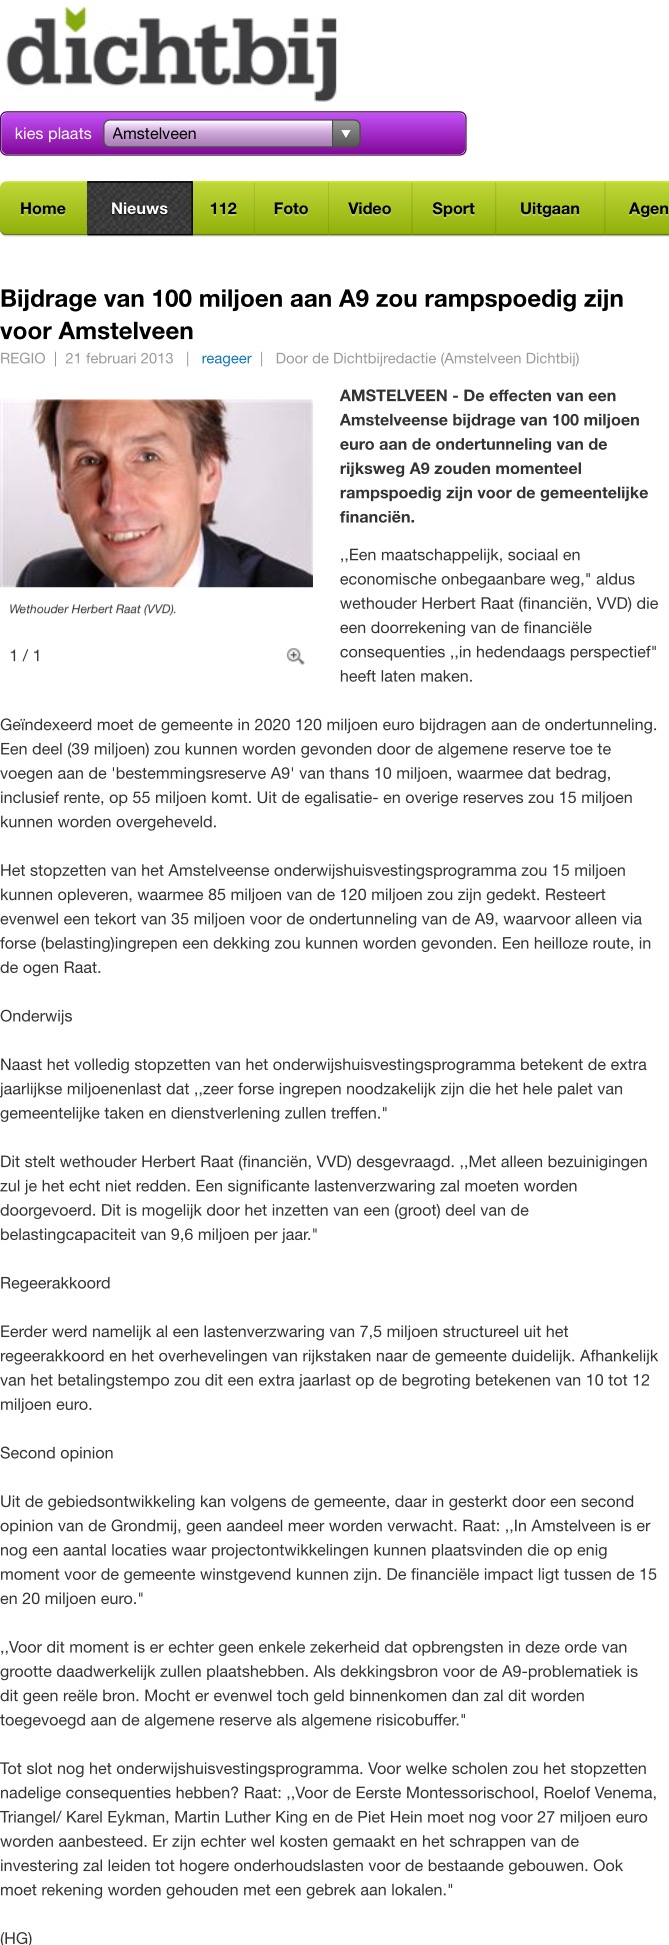 2013-21-2 AmstelveenDichtbij door Henk Godthelp: wethouder Herbert Raat over de keerzijde van doorgaan met tunnelplan A9